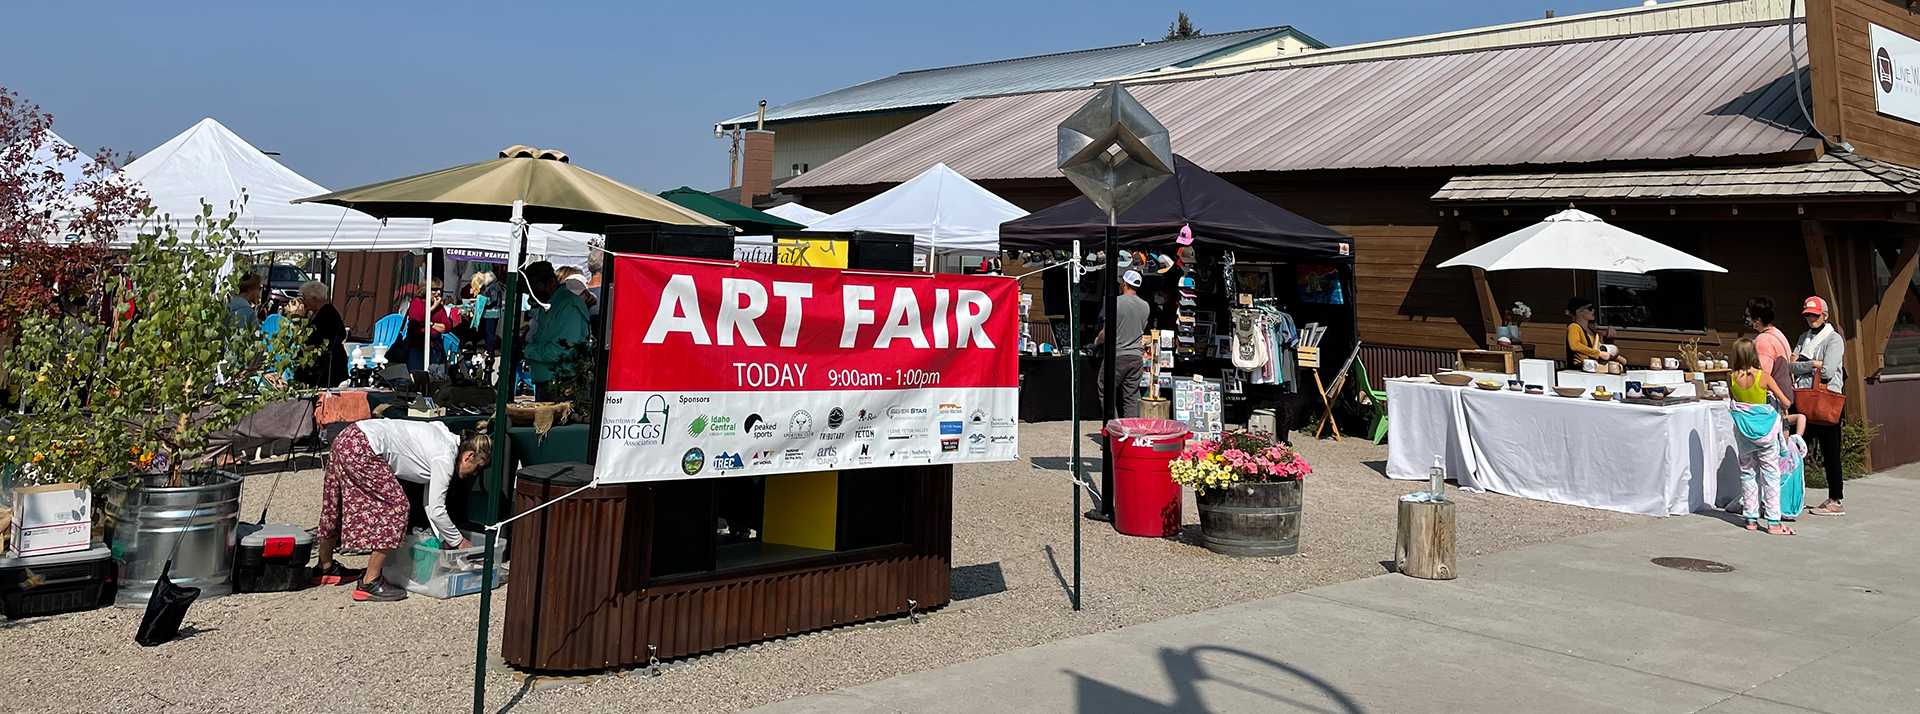 Driggs Art Fair